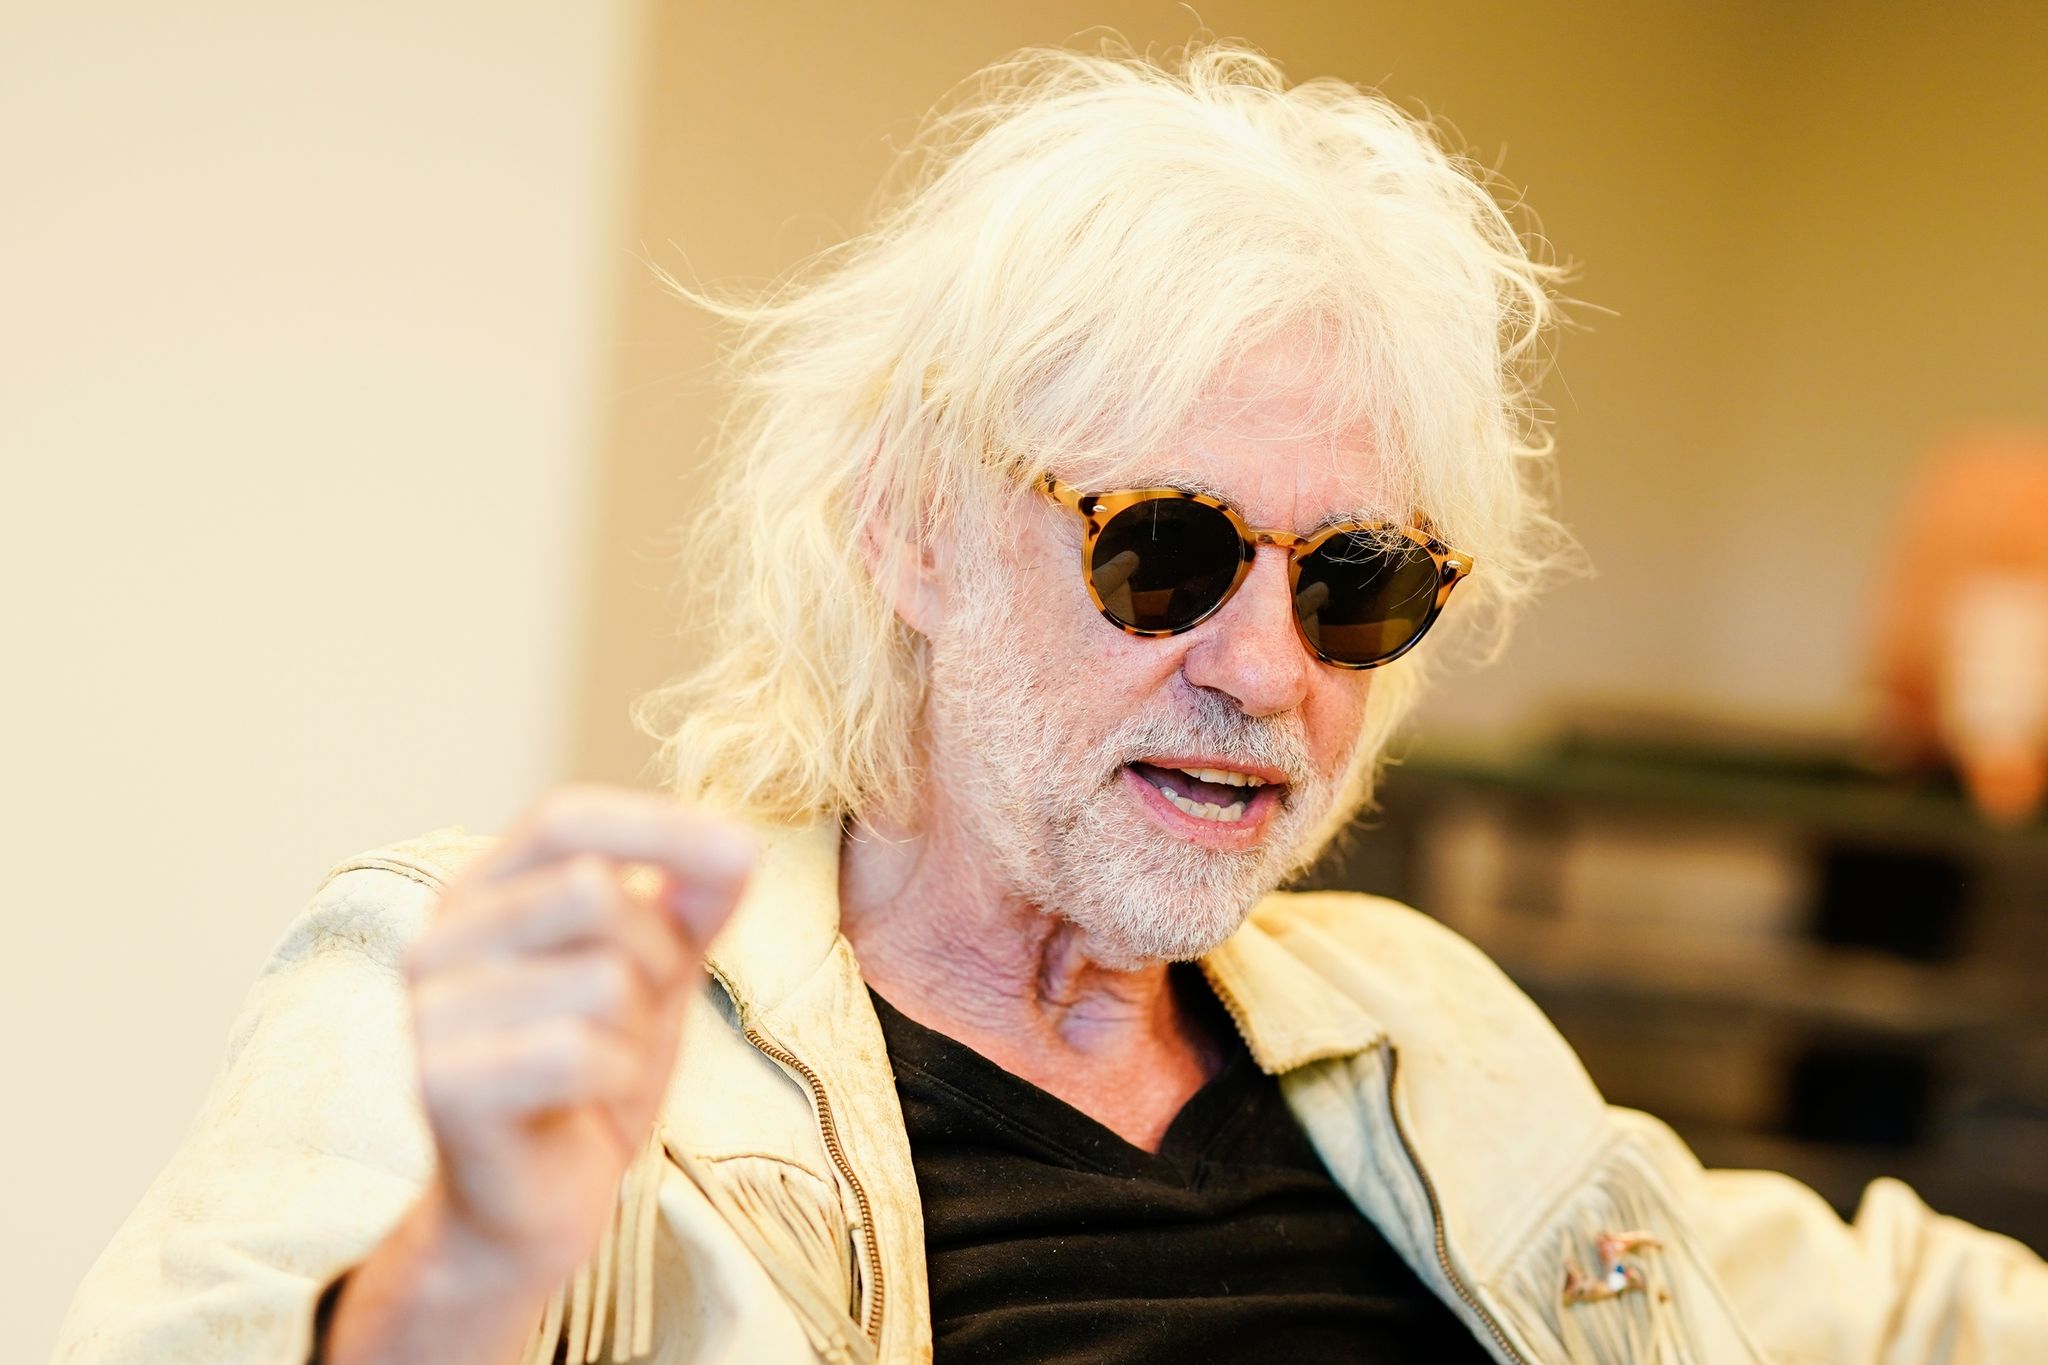 Der irische Rocksänger Bob Geldof, Mitbegründer der Gruppe The Boomtown Rats, gestikuliert während eines Gesprächs in einem Hotelzimmer.